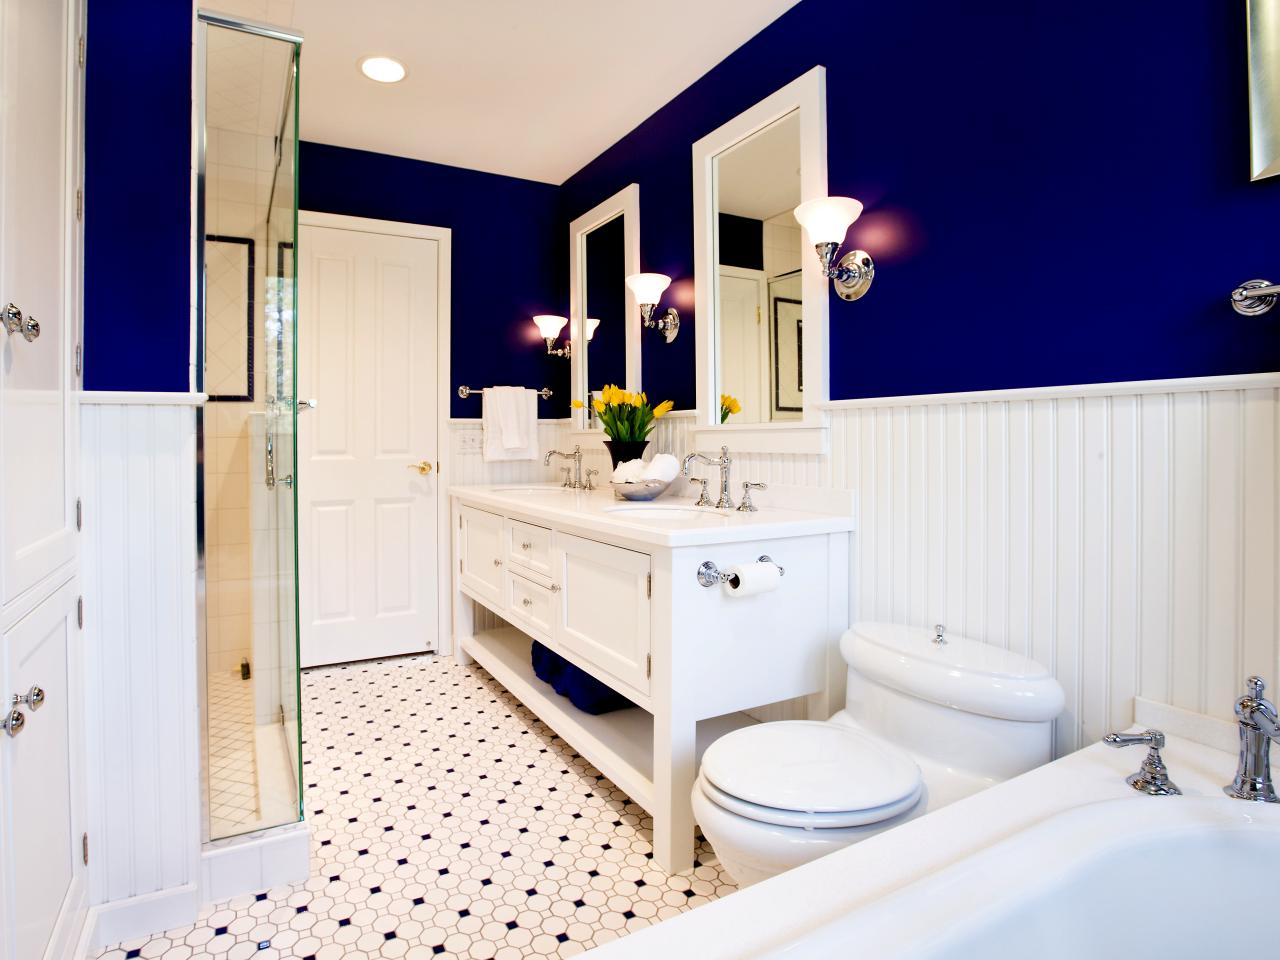 Azul cobalto en el baño: un interior con clase